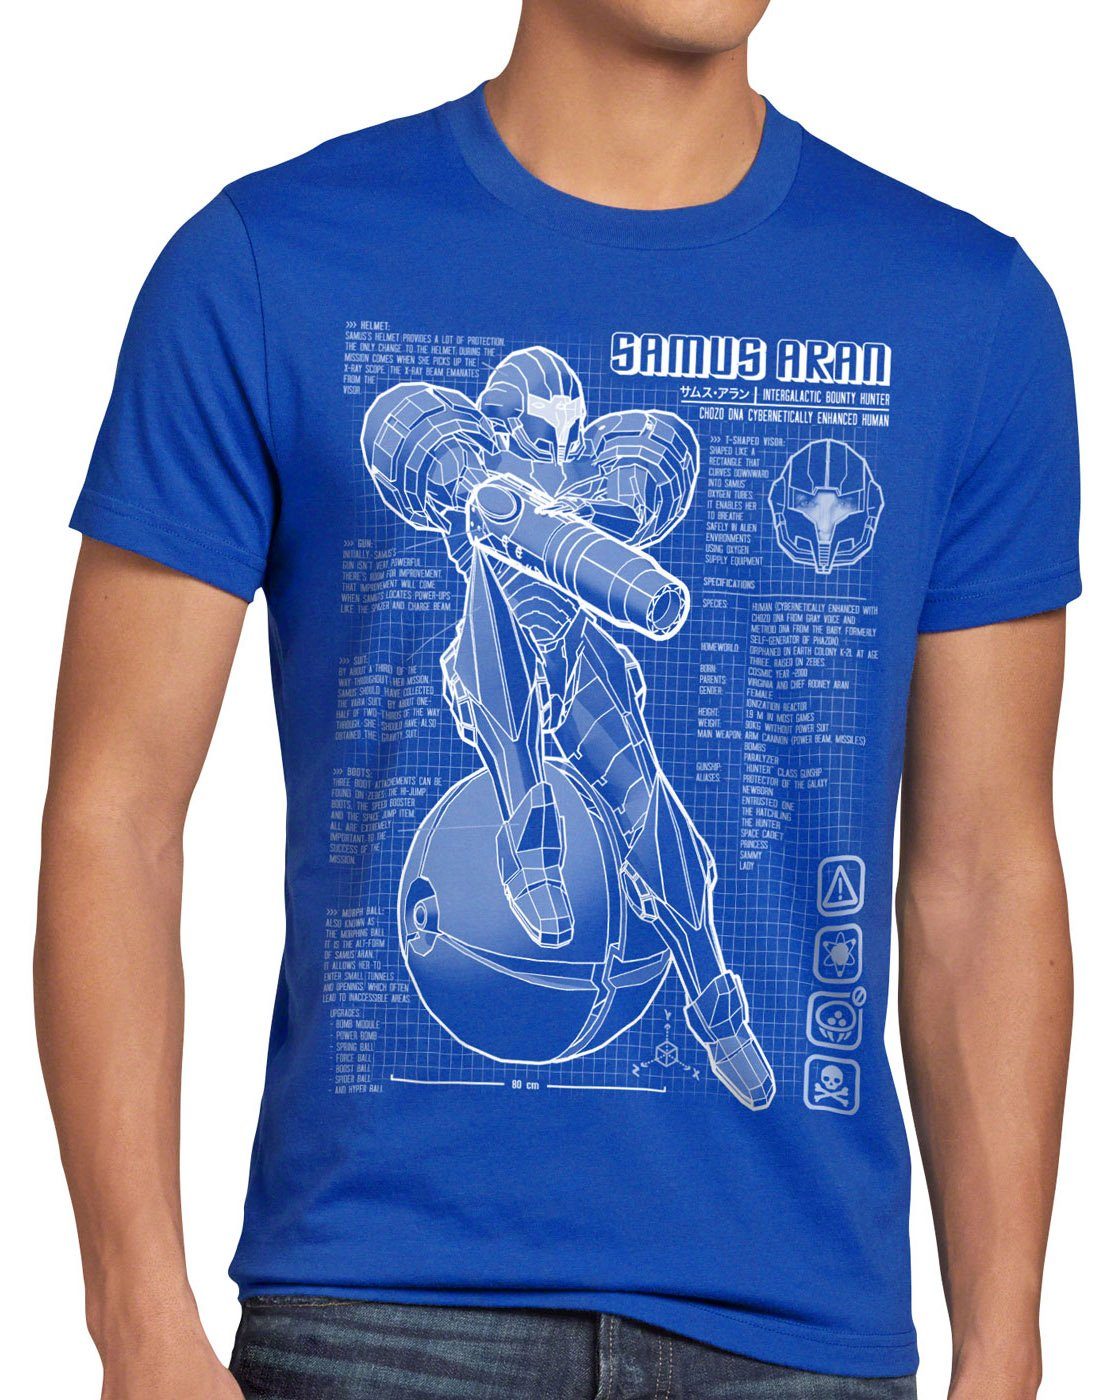 style3 Print-Shirt Herren T-Shirt Samus Blaupause metroid nerd gamer nes snes switch